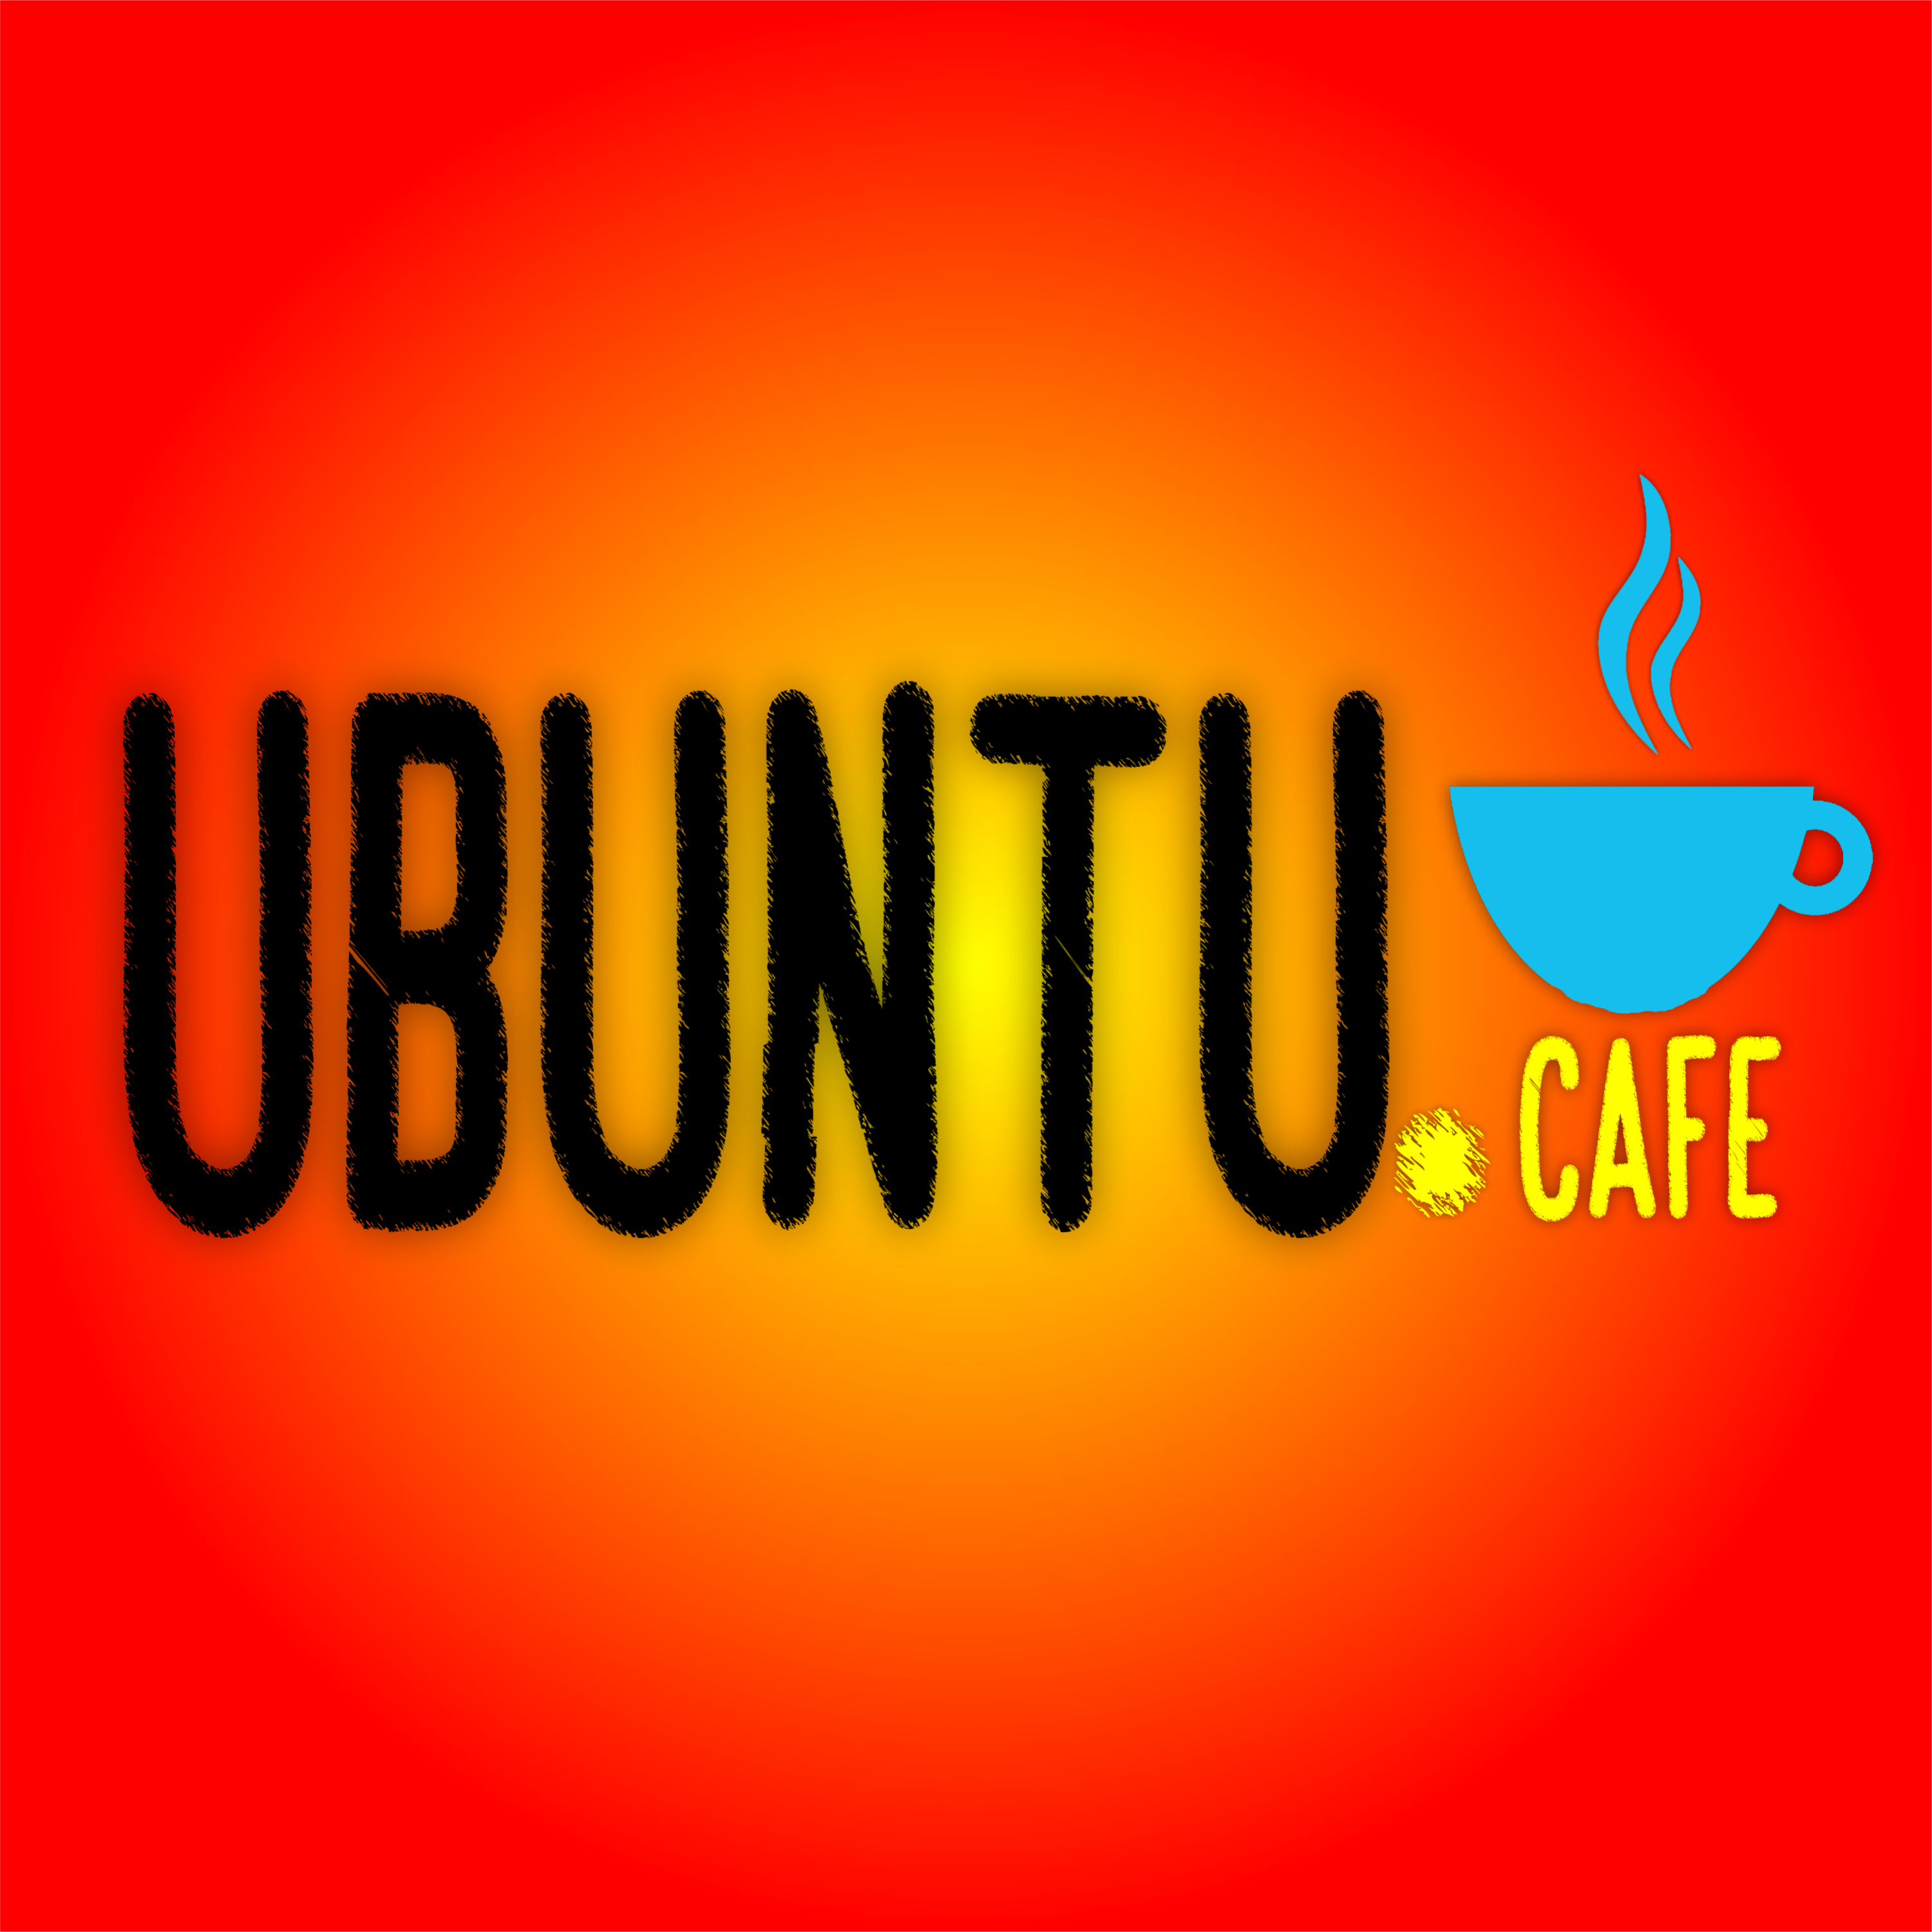 Ubuntu Cafe T3 C4 | Libro: La Quema de Judas en algunos Paises de LATAM